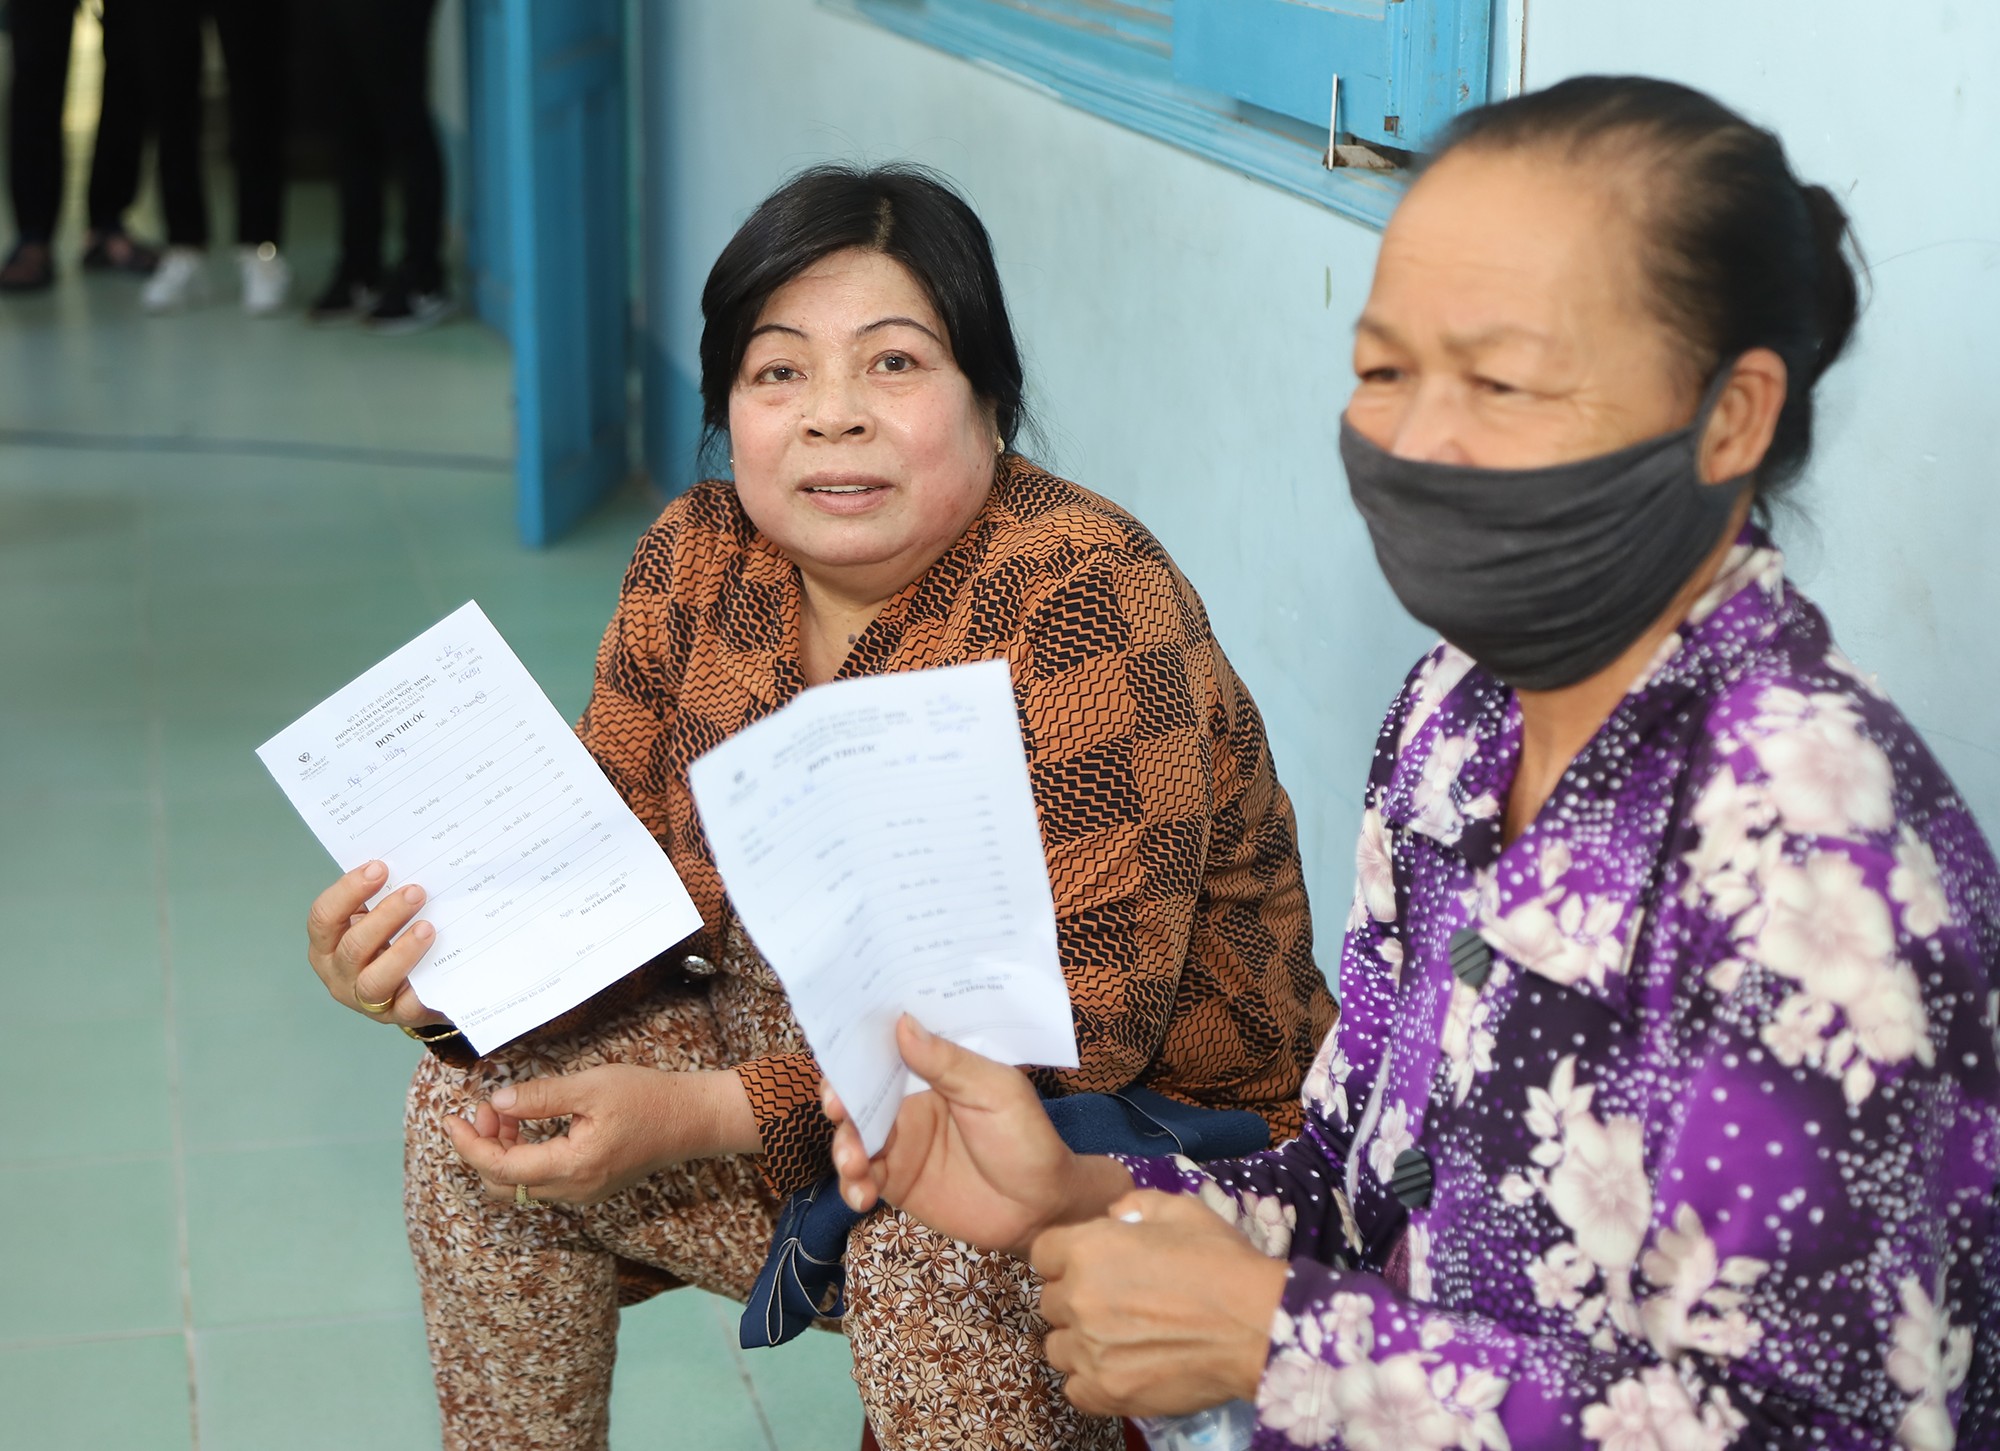 Chùm ảnh: Khám, phát thuốc miễn phí cho người dân Ninh Thuận ảnh 8